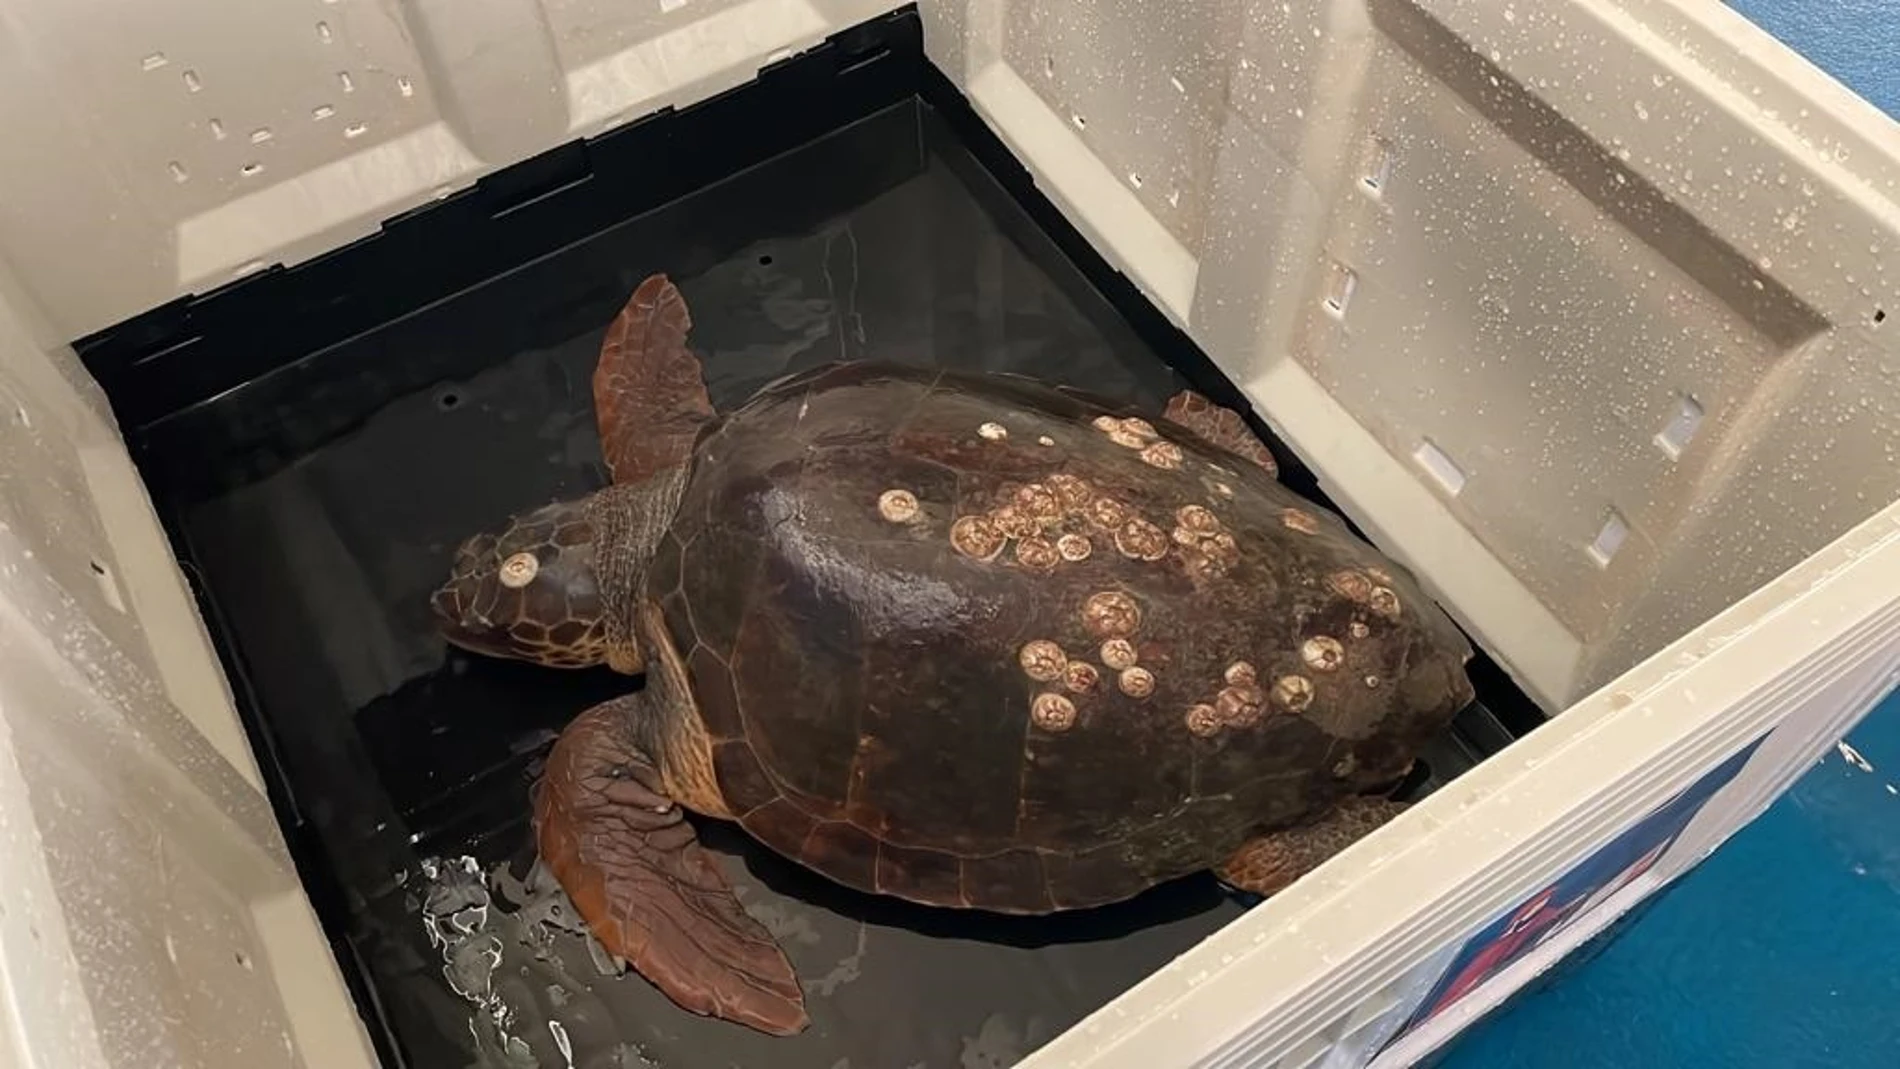 La tortuga "Caretta caretta", un macho de 40 kilos, ha sido bautizado como "Bonanza", como el puerto de Sanlúcar de Barrameda al que fue trasladada por la tripulación del buque de arrastre "Estele y Miriam". EFE/ "Hombre y Territorio"